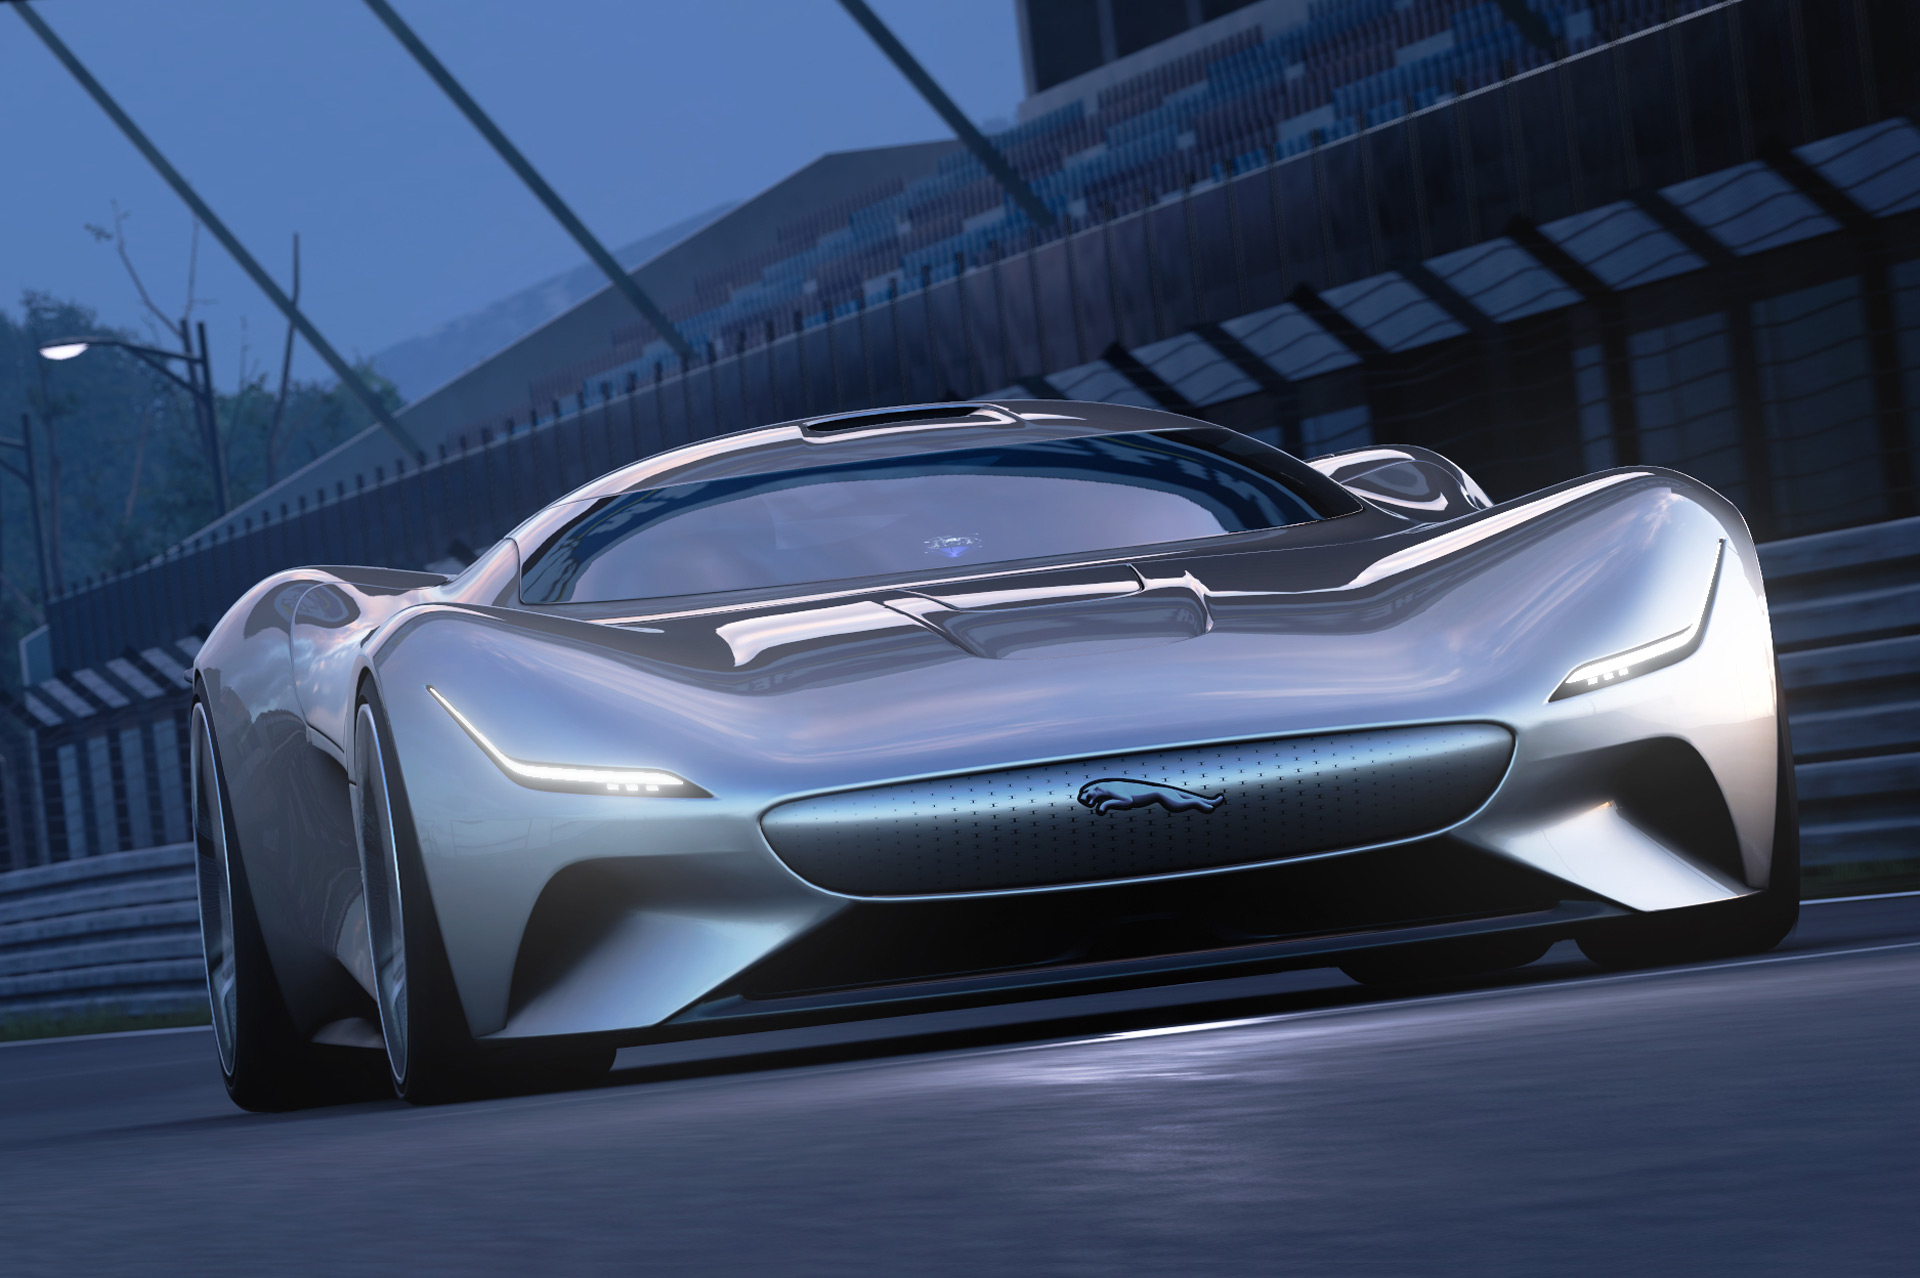 Jaguar unveils 1,005horsepower electric supercar concept